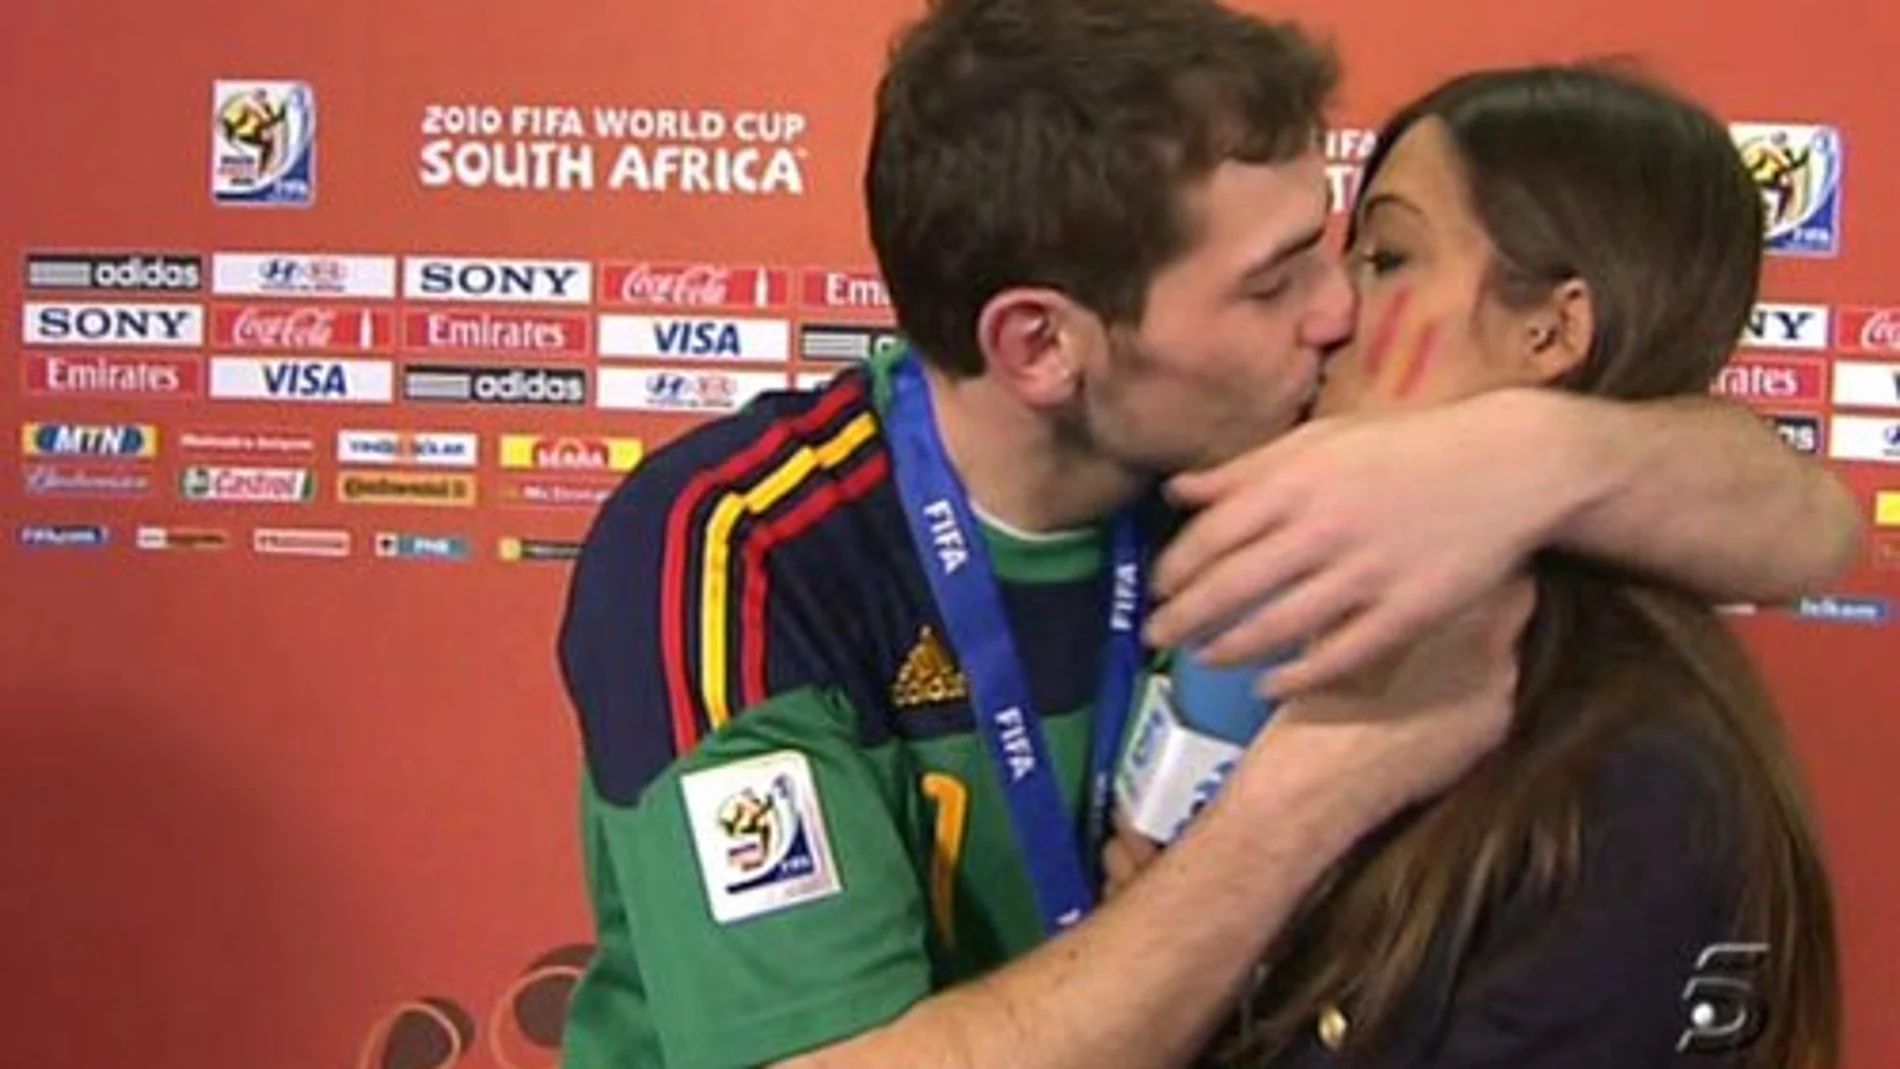 El portero de la selección española, Iker Casillas, en el momento en el que besa a su novia, la periodista Sara Carbonero (d), durante la entrevista que concedió el guardameta tras el partido correspondiente a la final del Mundial de Sudáfrica.